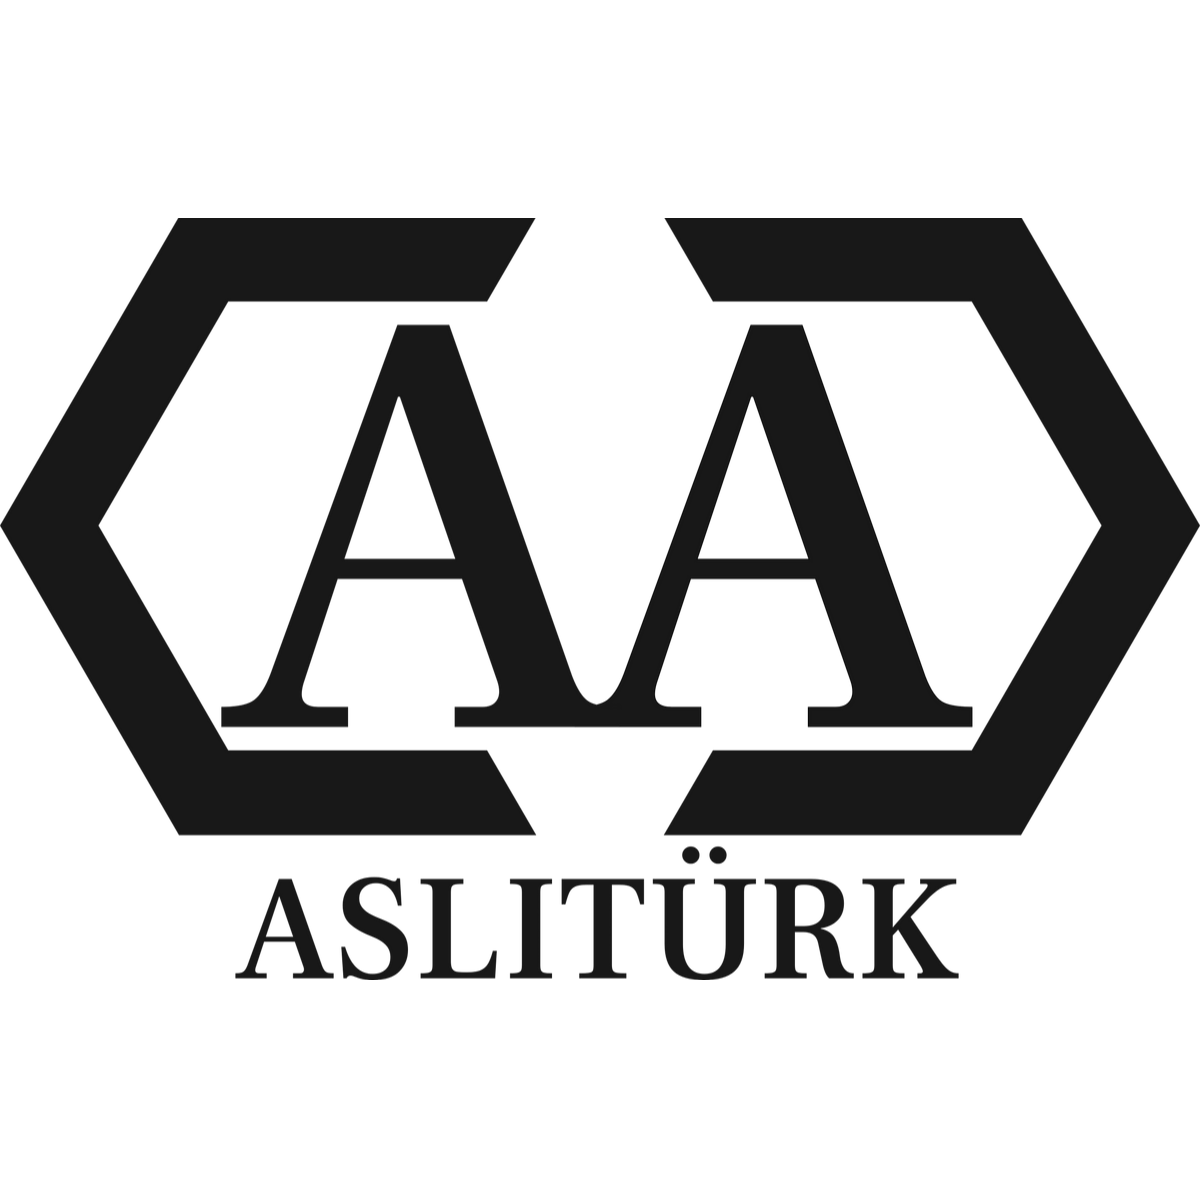 Ahmet Aslitürk Fenster- und Büroreinigung in Frankfurt am Main - Logo